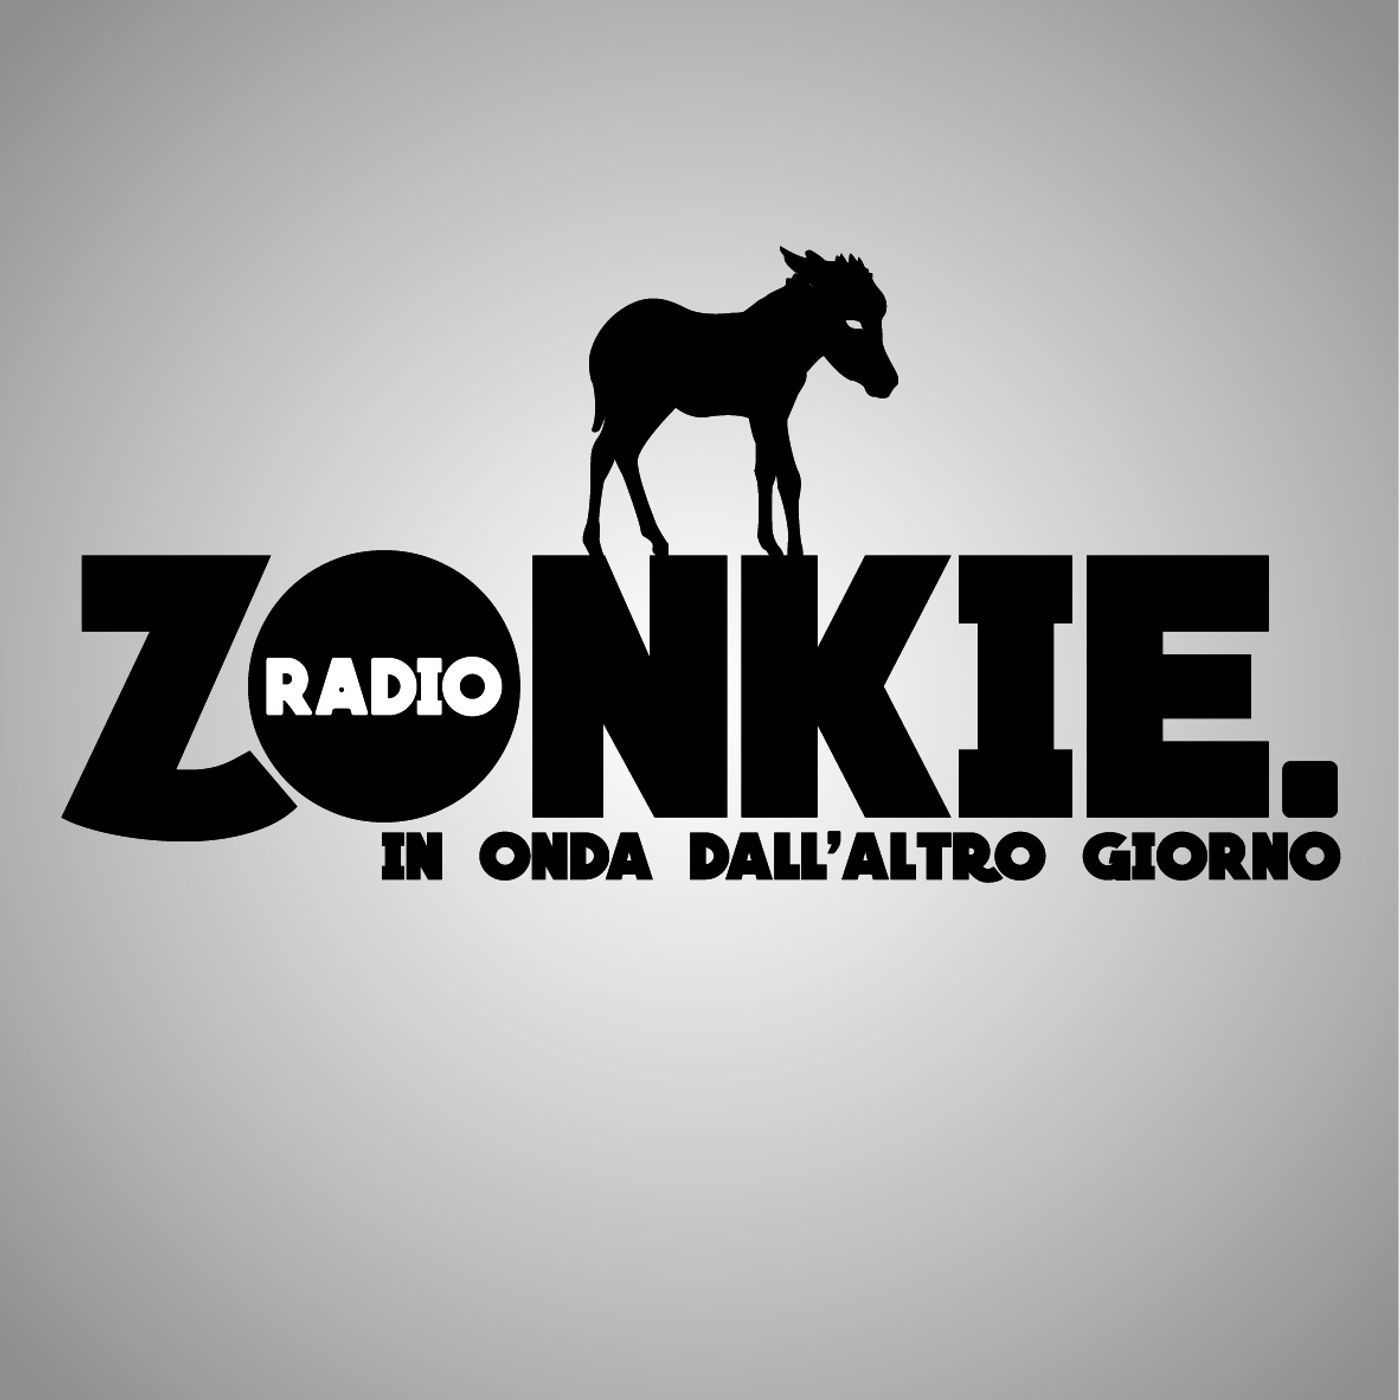 Radio Zonkie